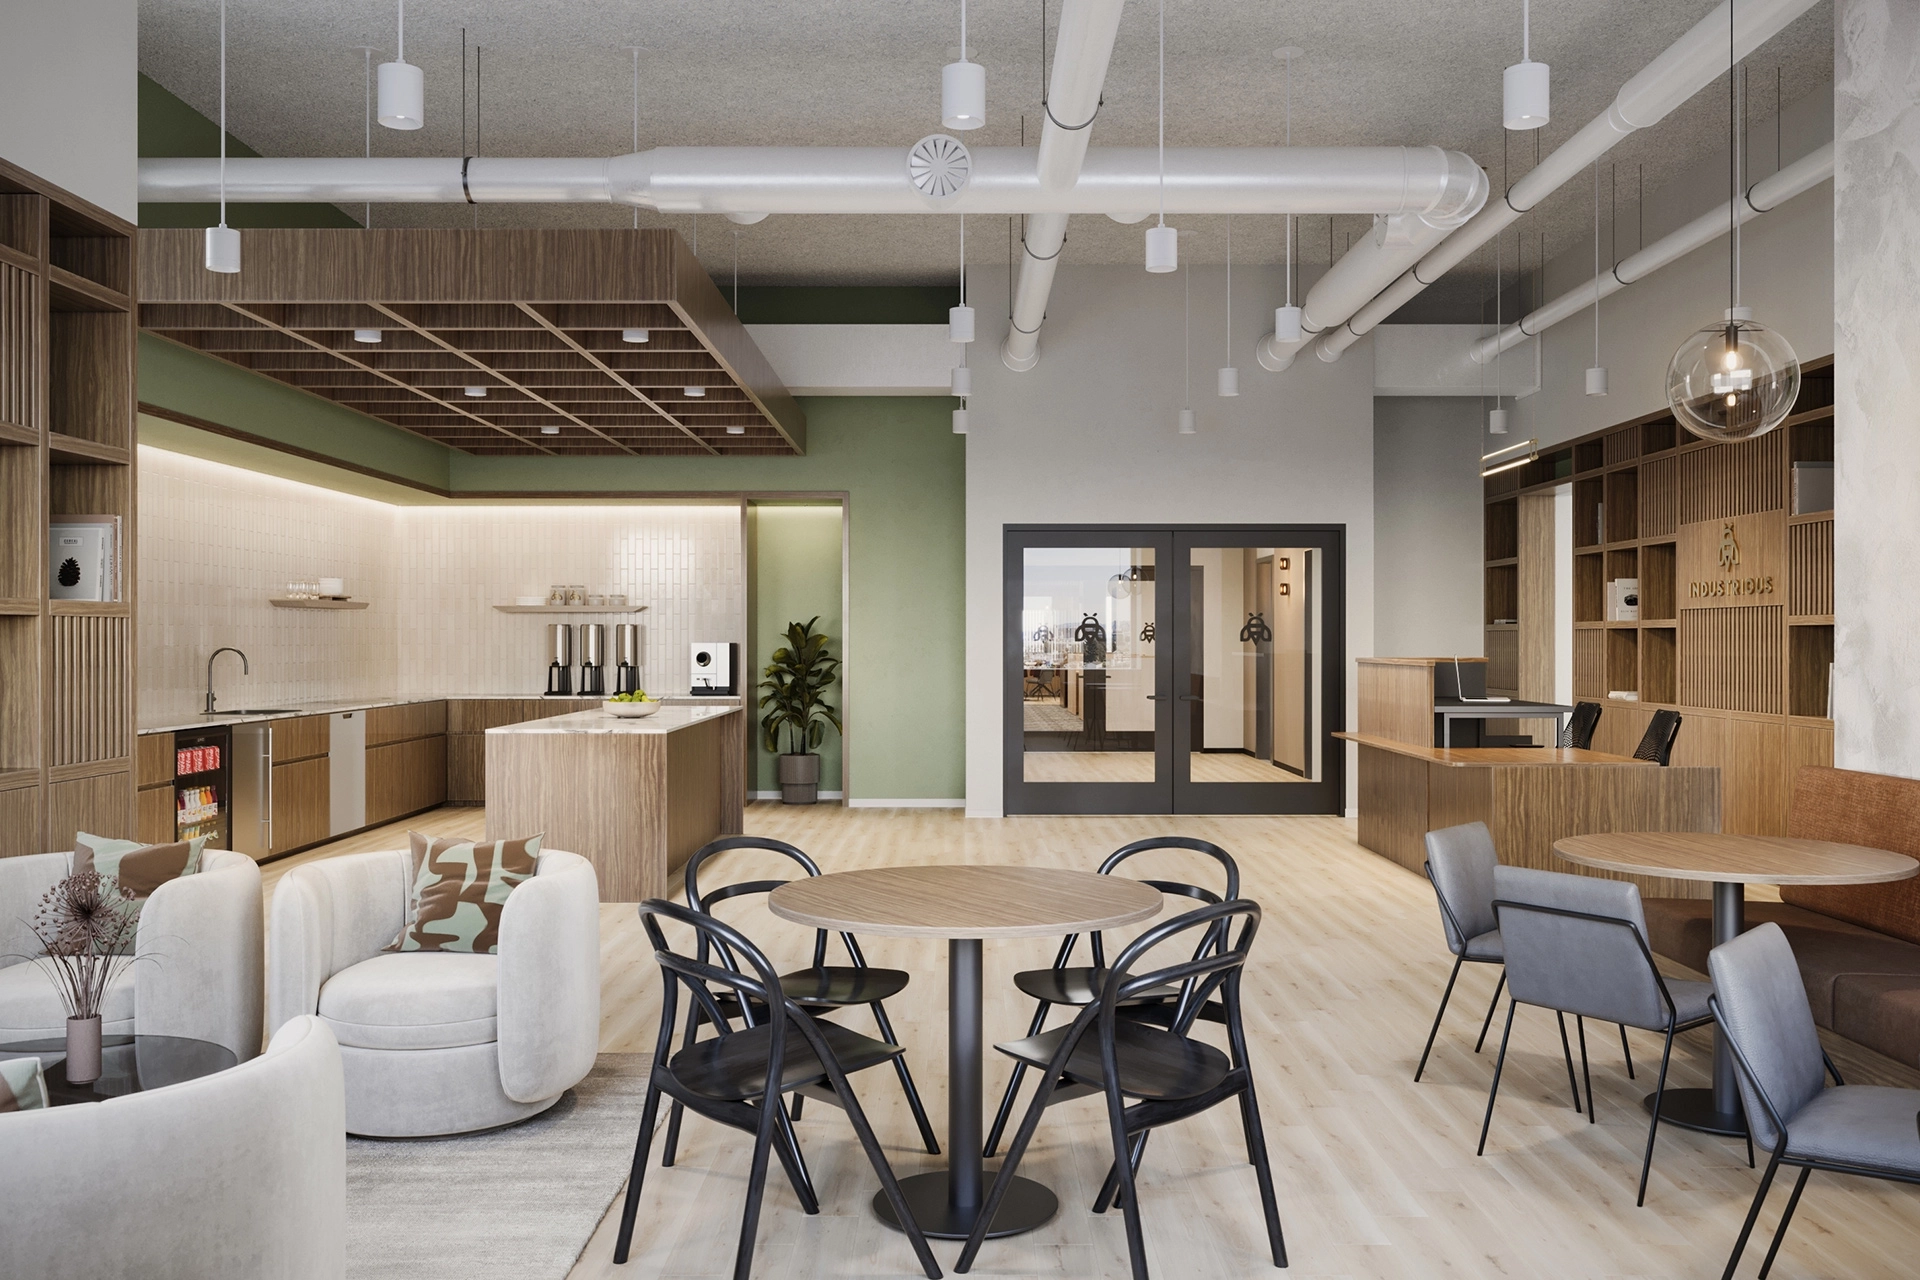 Espace de travail de bureau moderne avec sièges mixtes, coin cuisine et tuyaux de plafond apparents. Palette de couleurs neutres et vertes avec des accents de bois naturel.